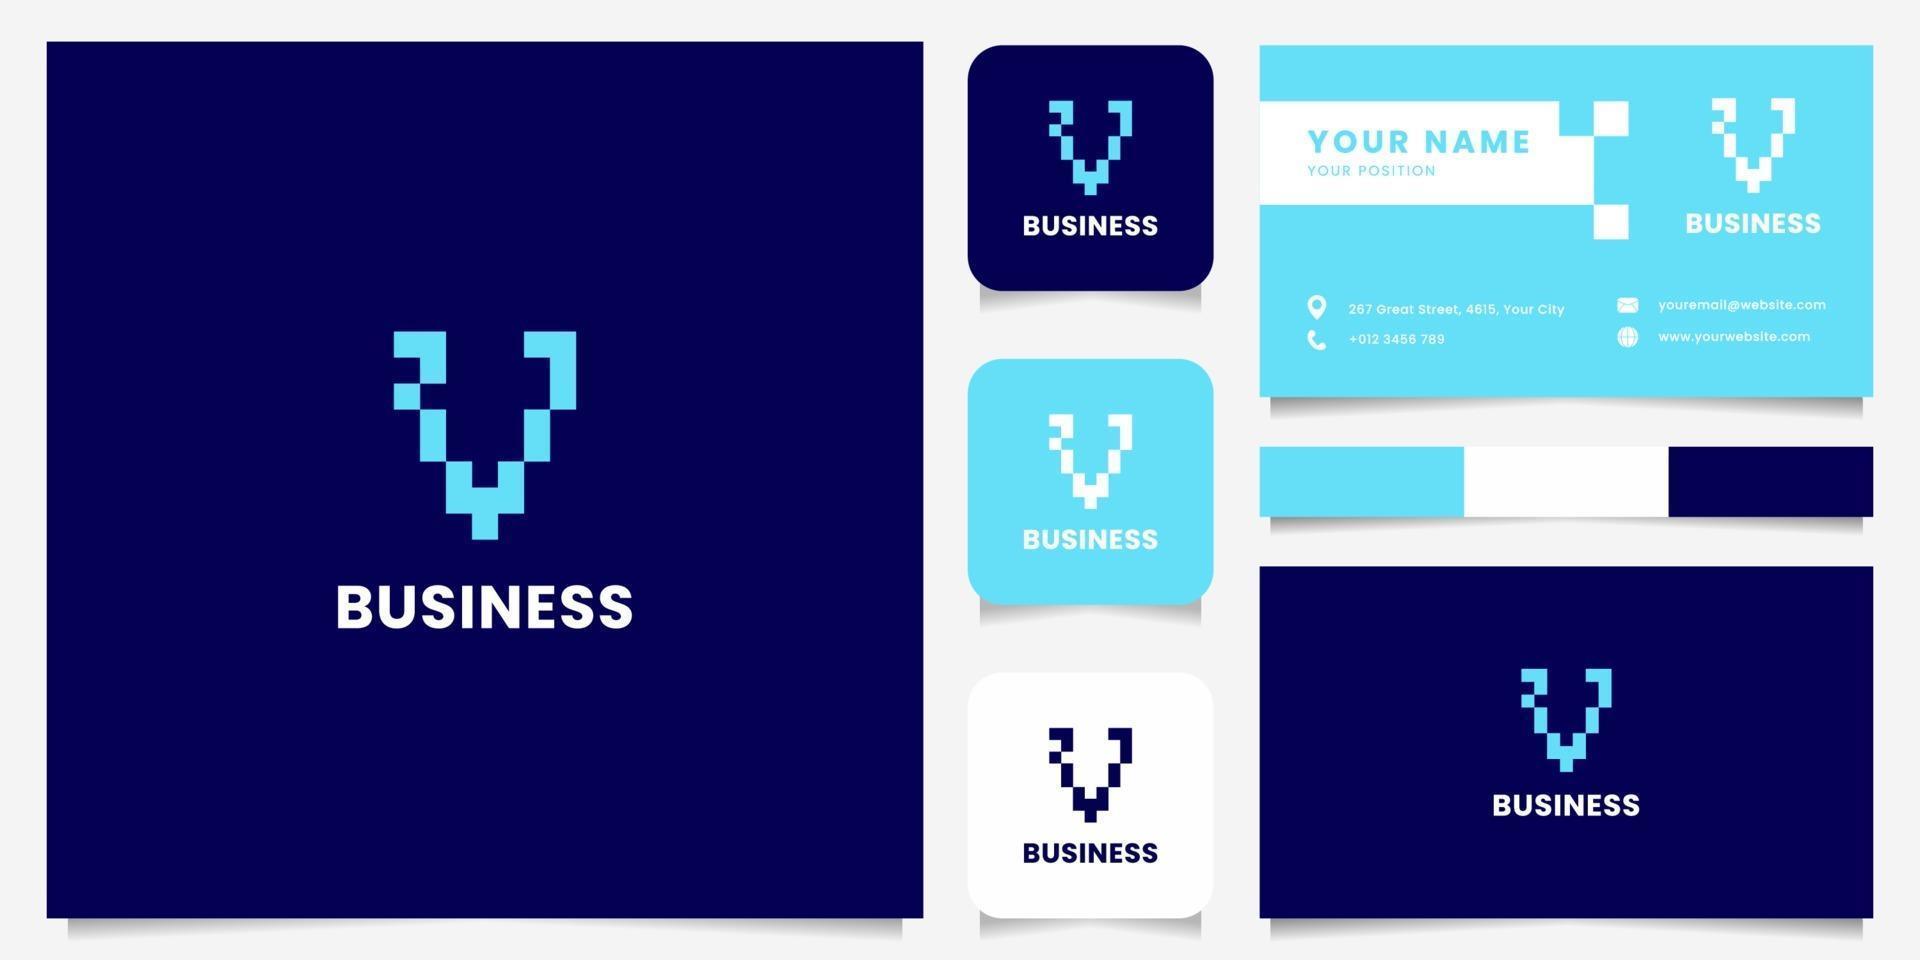 eenvoudig en minimalistisch blauw pixel letter v-logo met sjabloon voor visitekaartjes vector